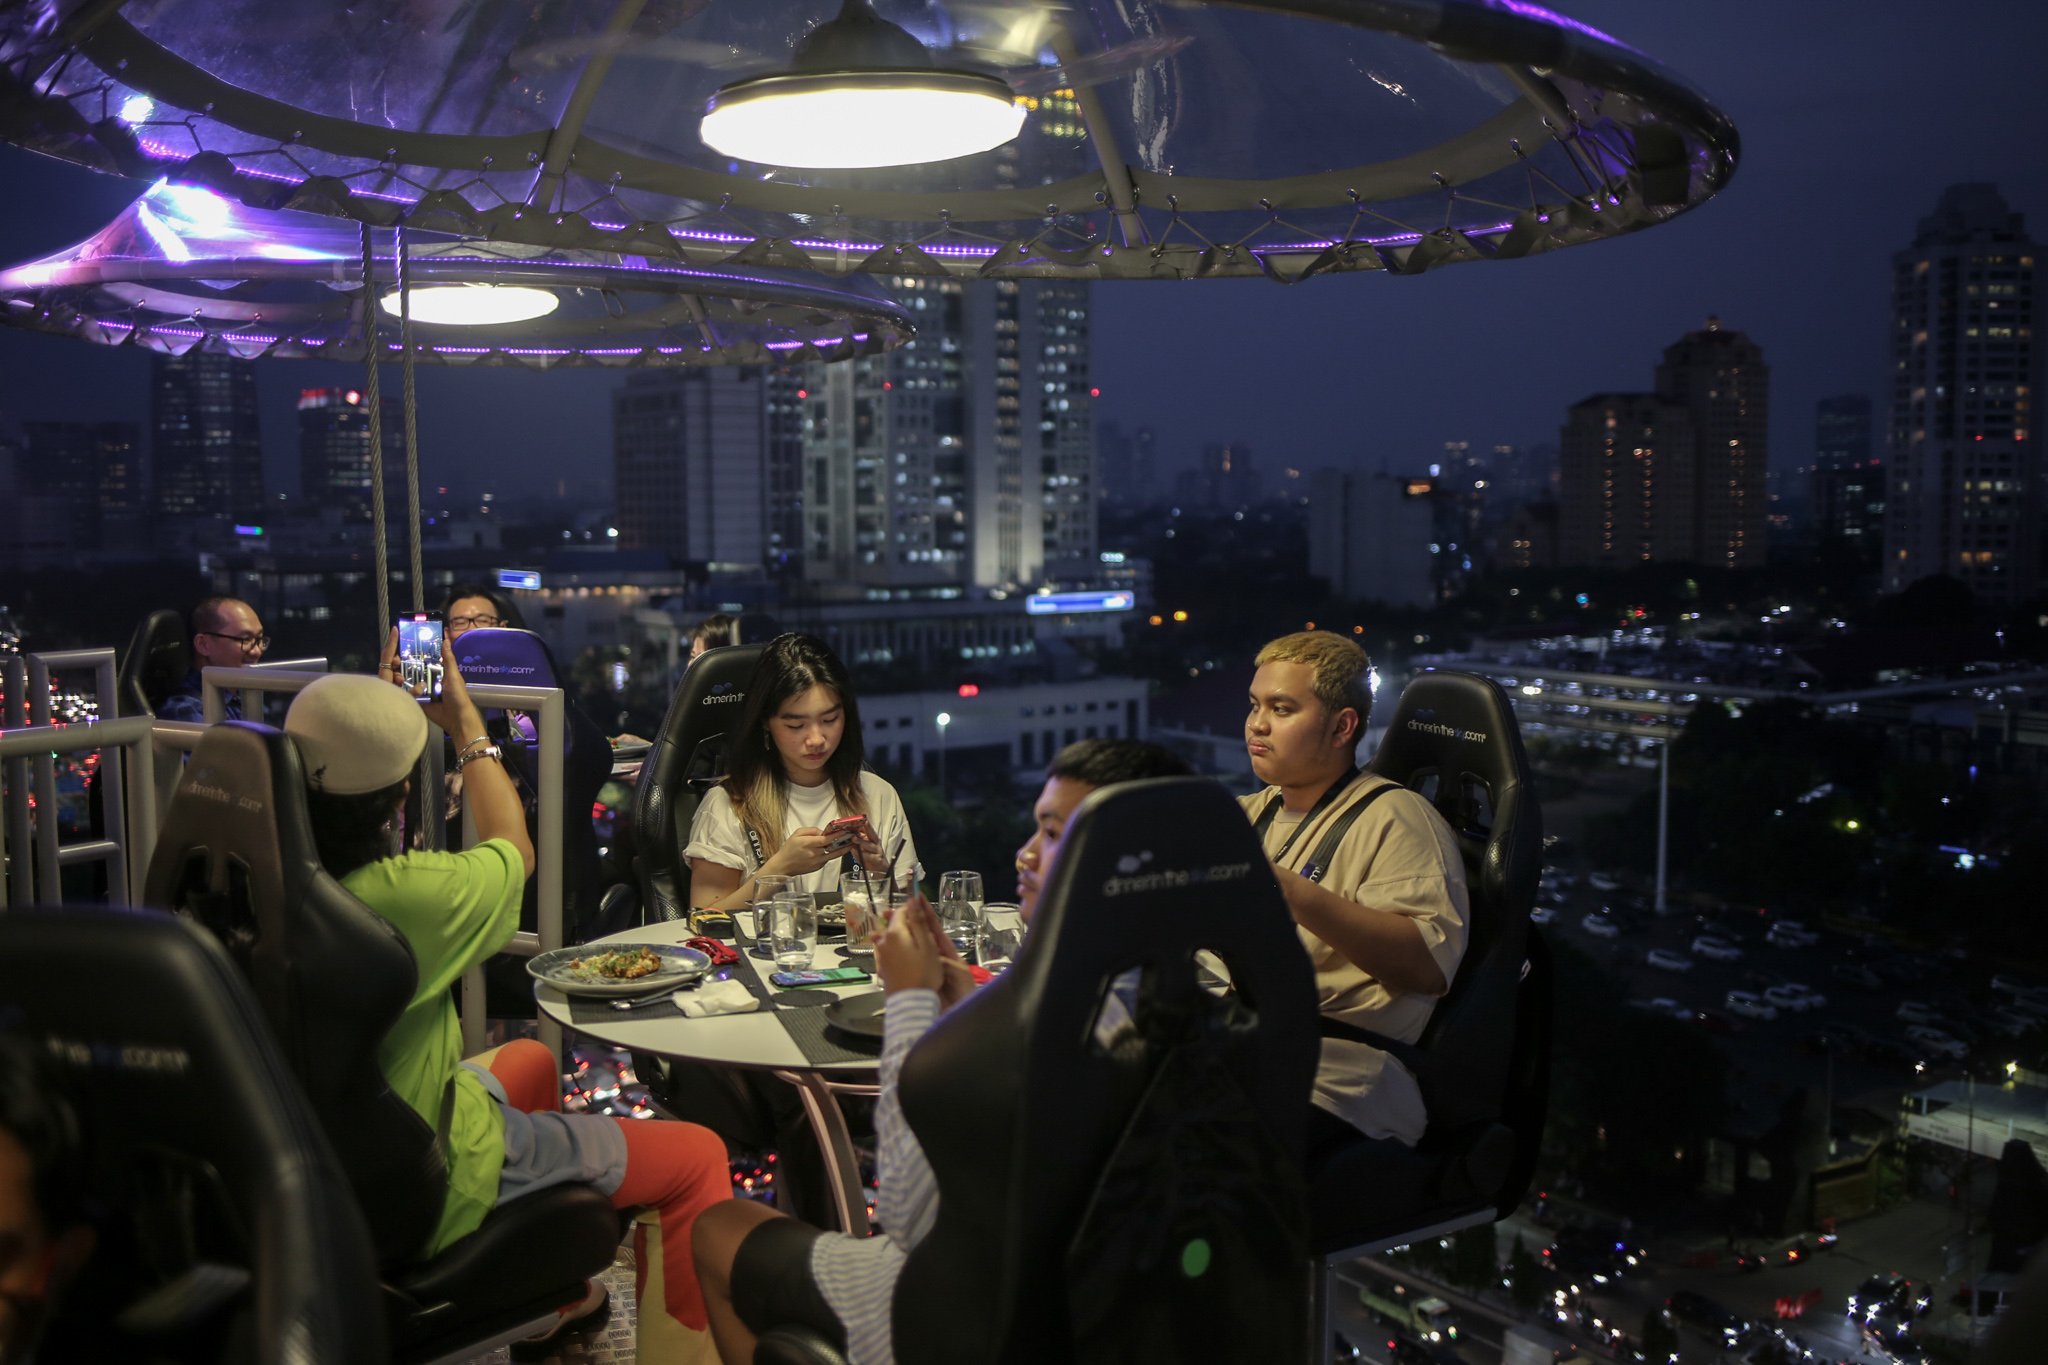 Pengunjung menyantap hidangan di Lounge in The Sky, Jakarta, Selasa (29/3/2022). Lounge in The Sky merupakan restoran yang menyajikan sensasi menyantap hidangan dari atas ketinggian dengan pemandangan cakrawala 360 derajat di pusat kota Jakarta dengan tingkat keamanan sesuai standar internasional yang tersertifikasi. Lounge in the sky mengudara setiap hari dari jam 17.00 hingga 21.00 WIB.